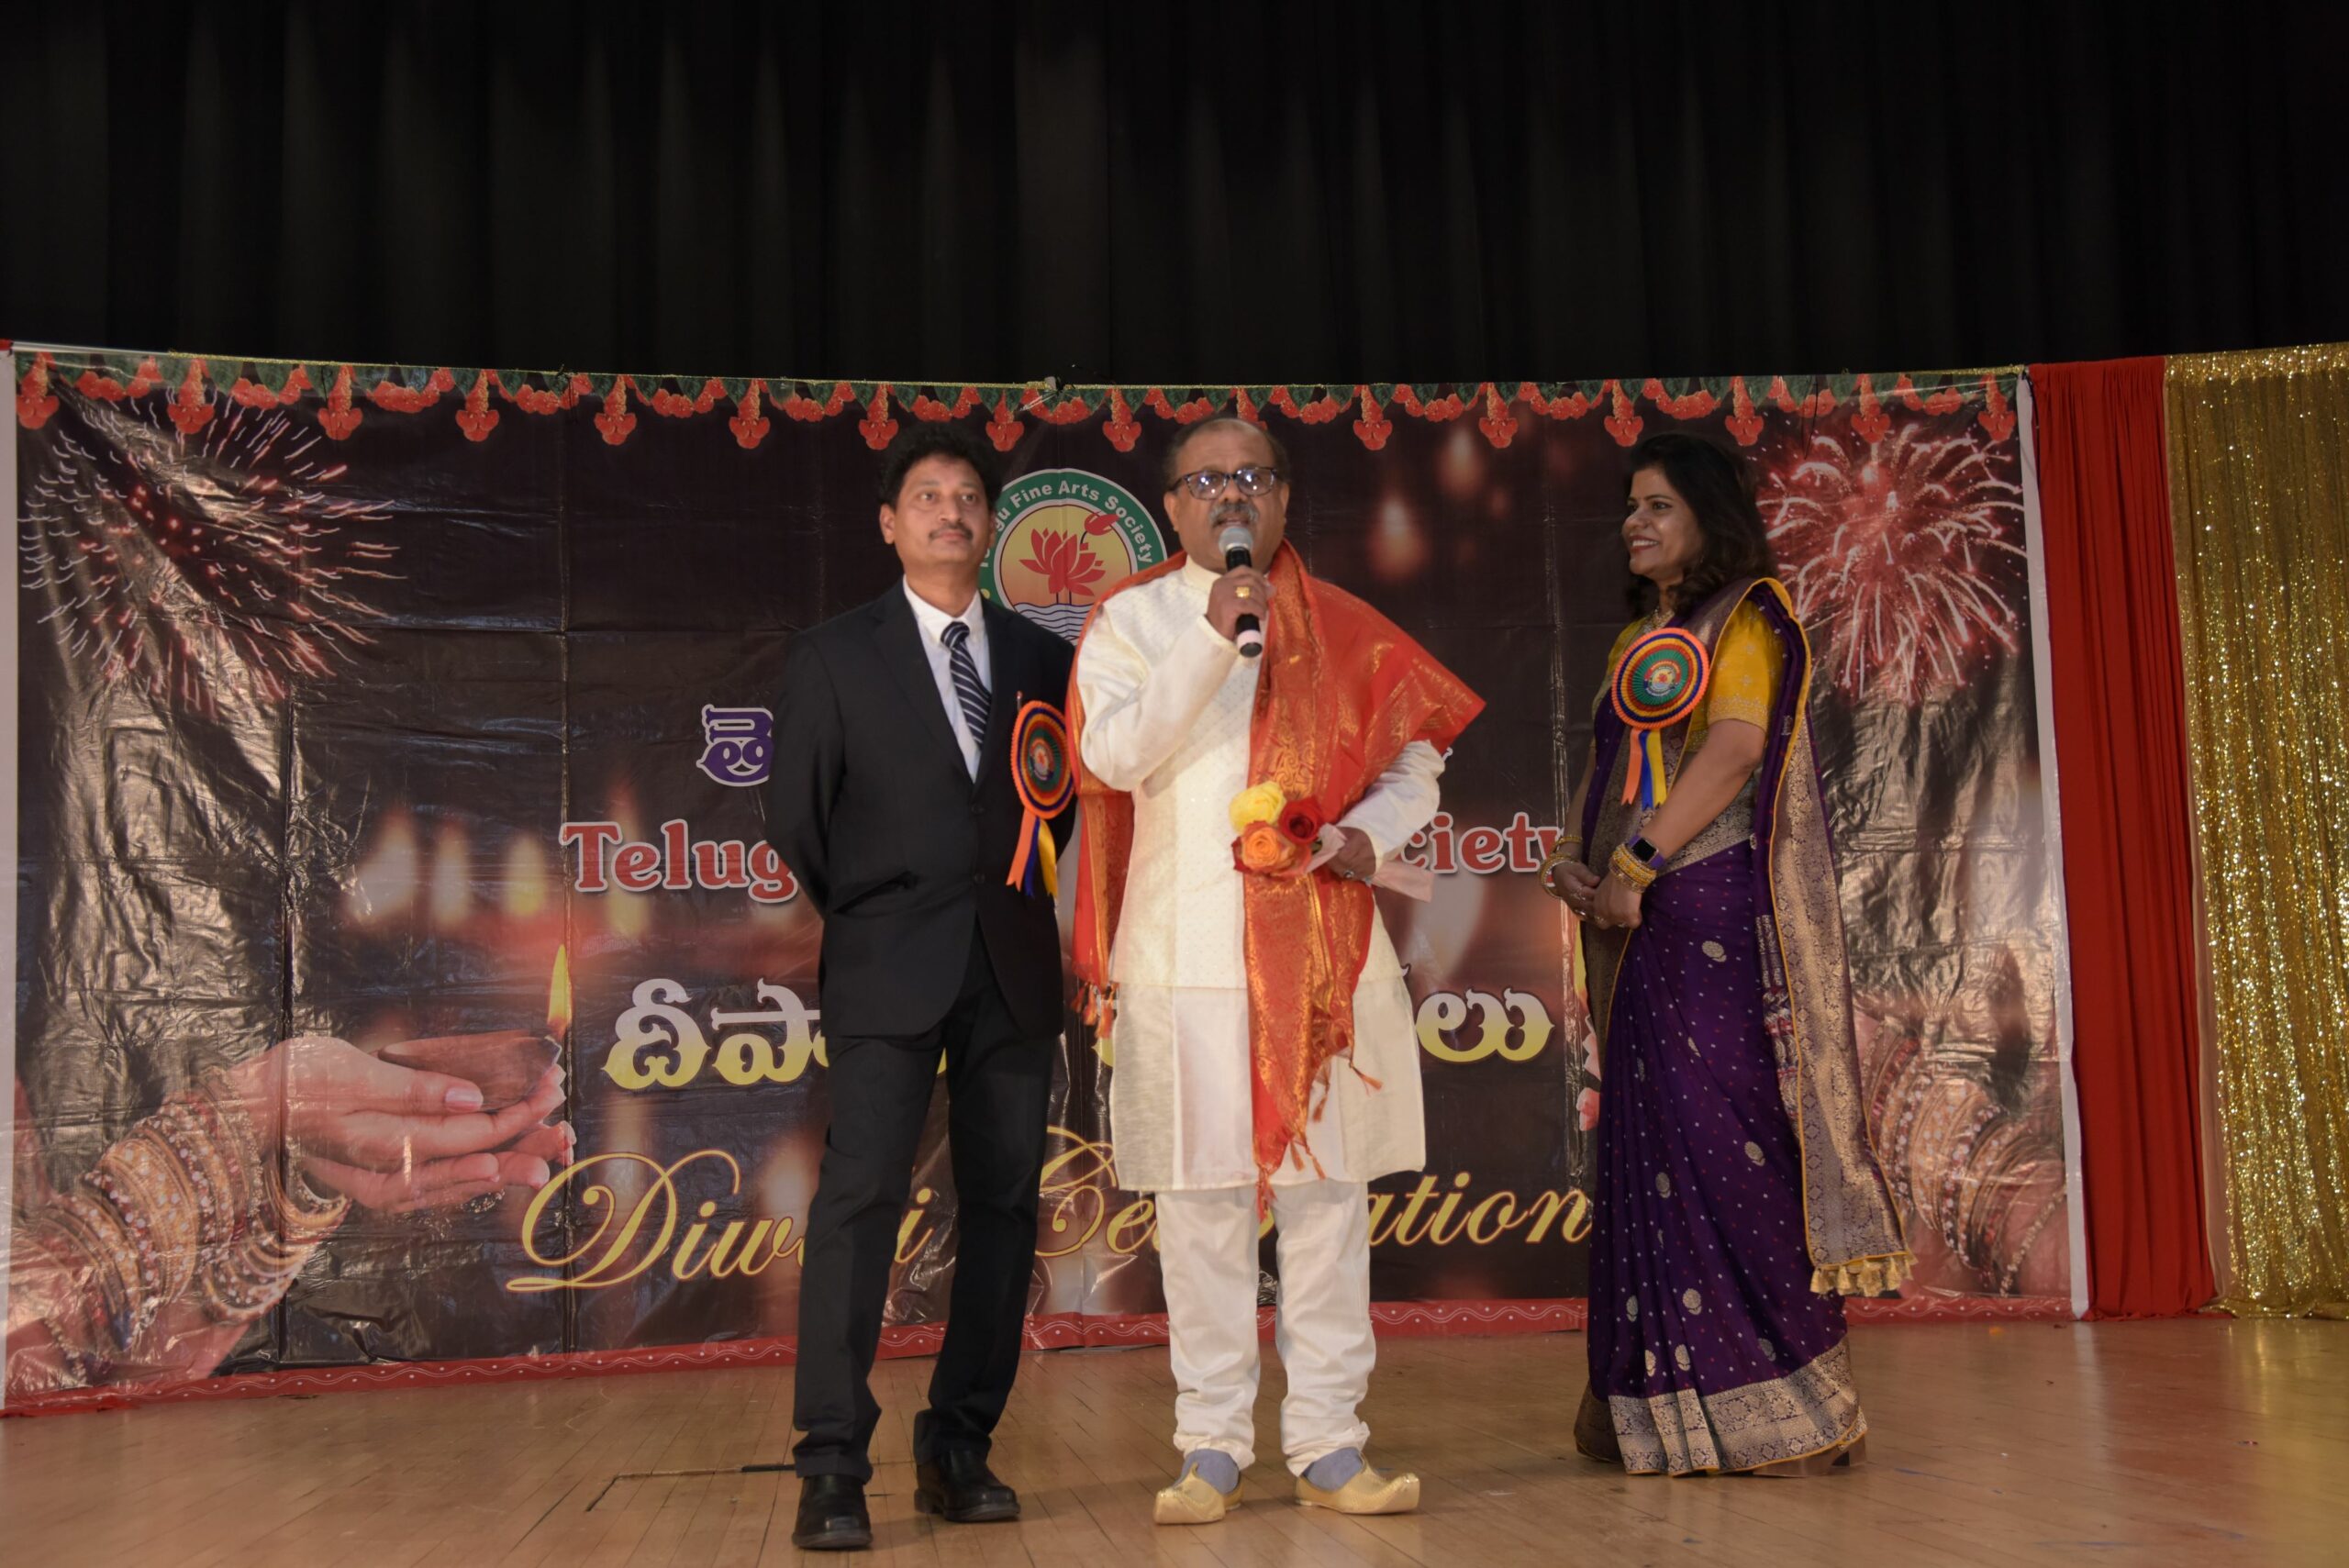 Telugu fine arts deepaavali -2022 celebrations